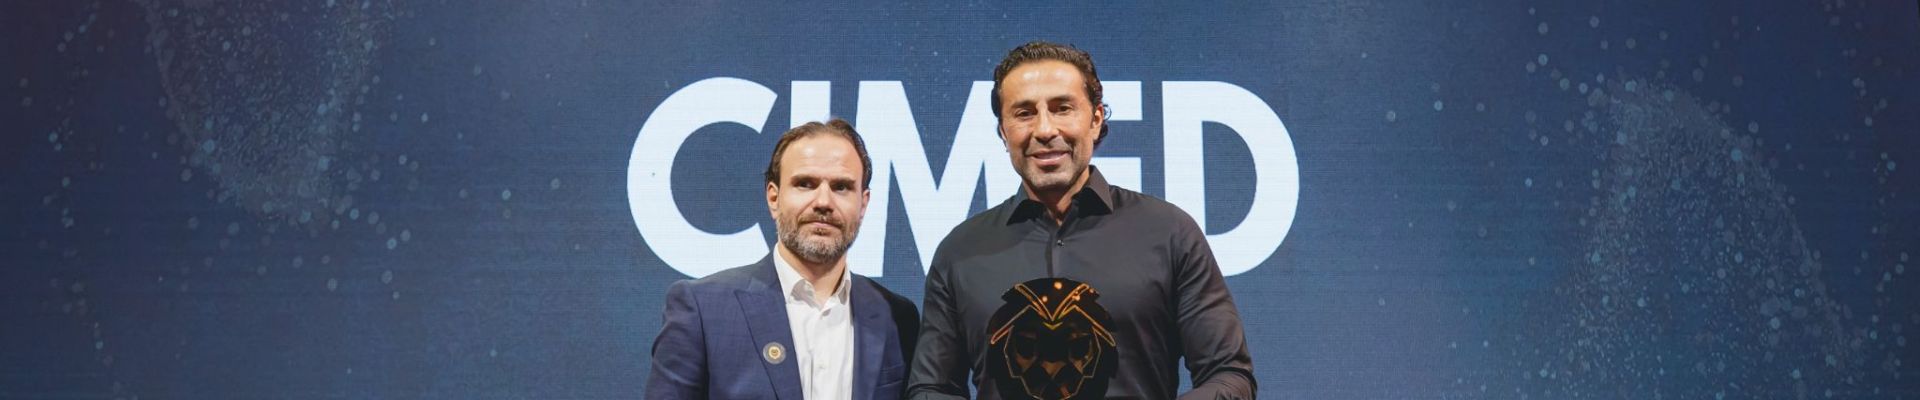 Cimed anuncia a aquisição da empresa catarinense R2M